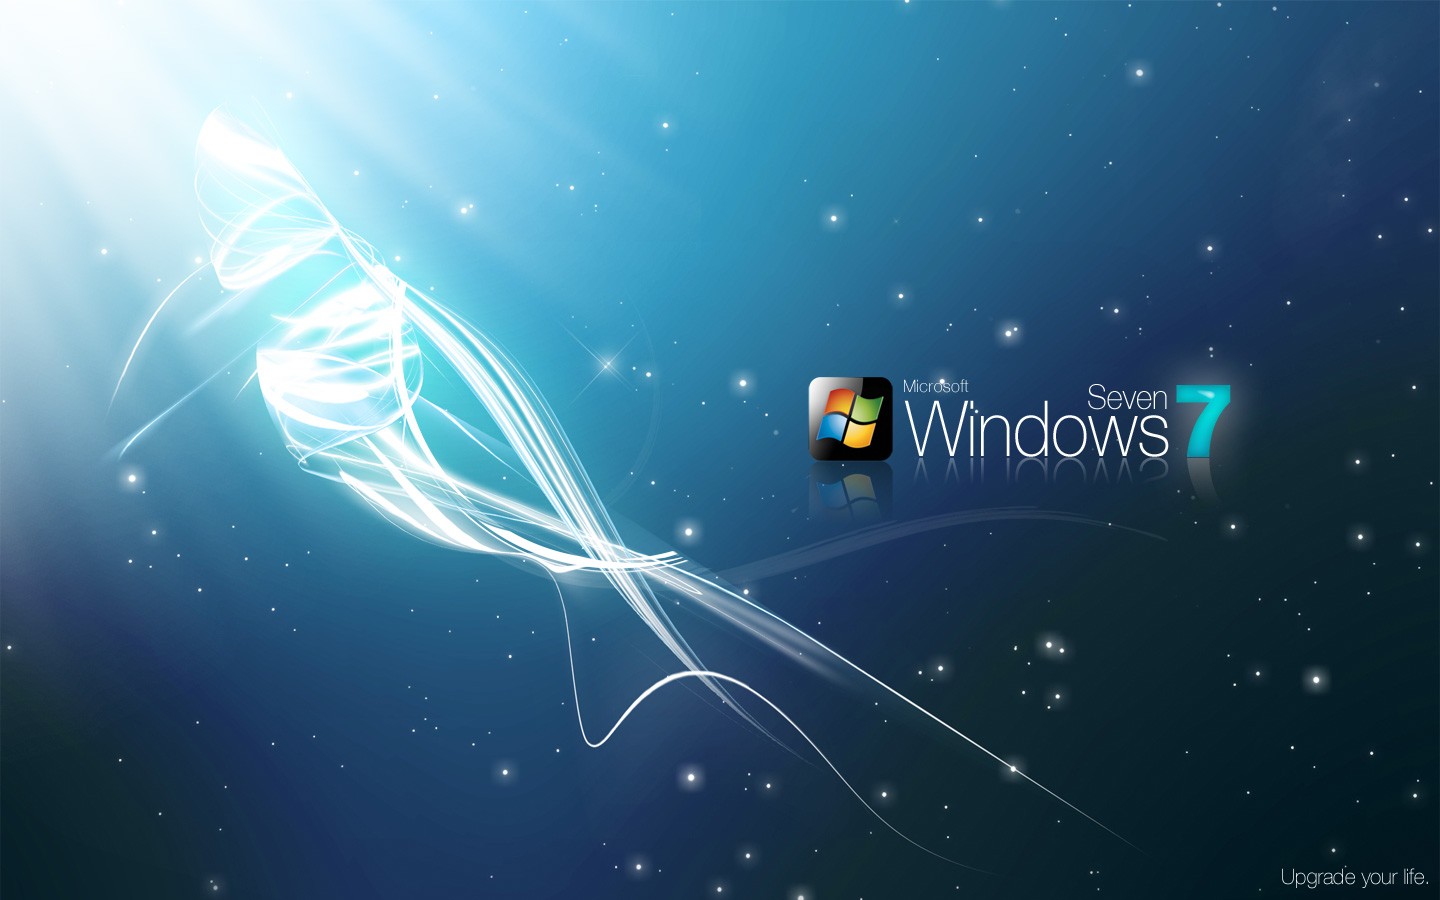 Windows 7 Upgrade your life734022836 - Windows 7 Upgrade your life - Your, Windows, Upgrade, Life